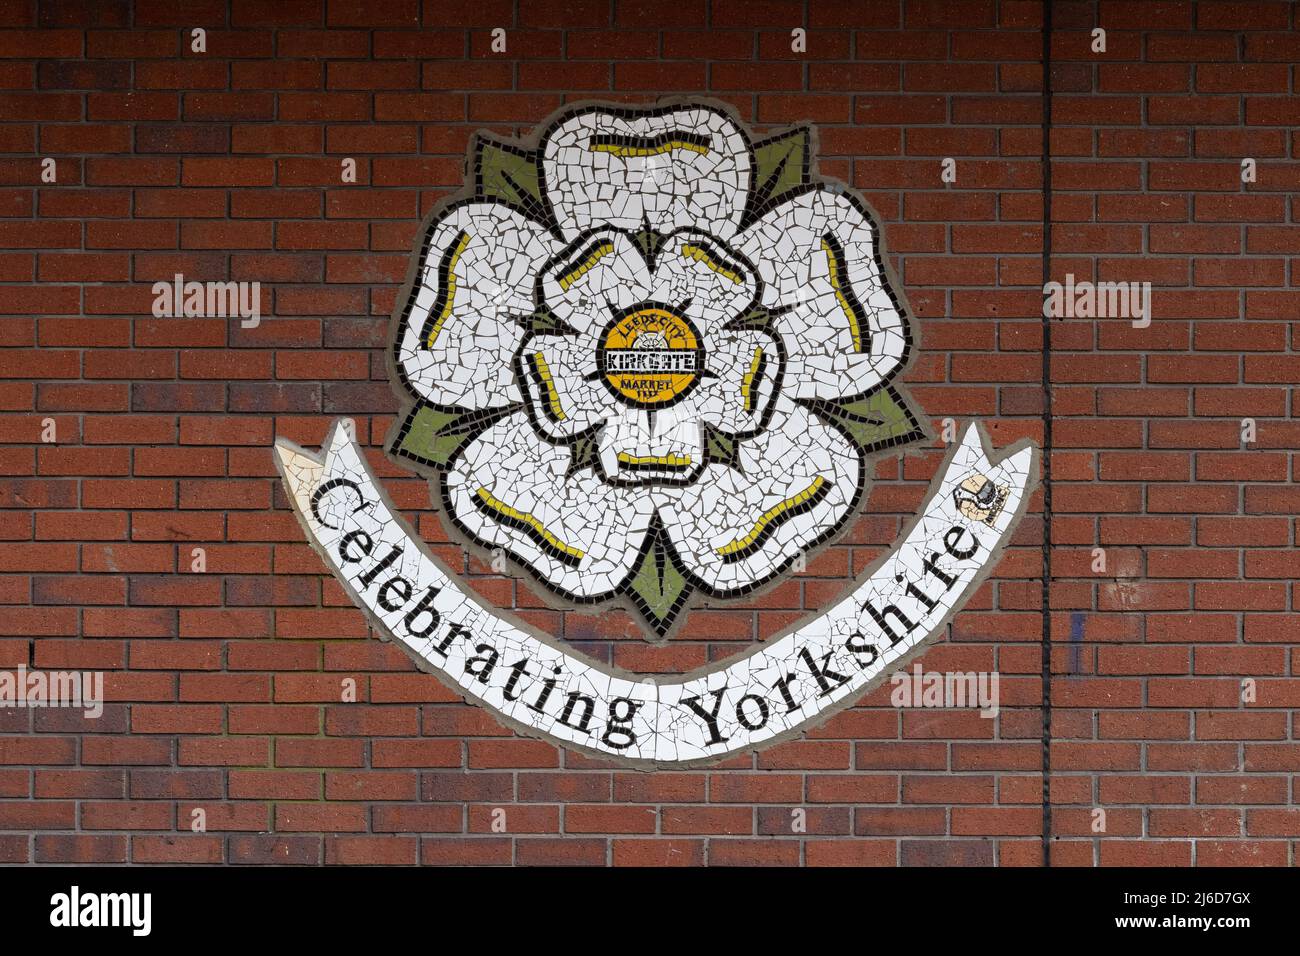 Yorkshire white rose mosaic 'celebrating yorkshire' - Leeds Kirkgate Market, Leeds Stock Photo